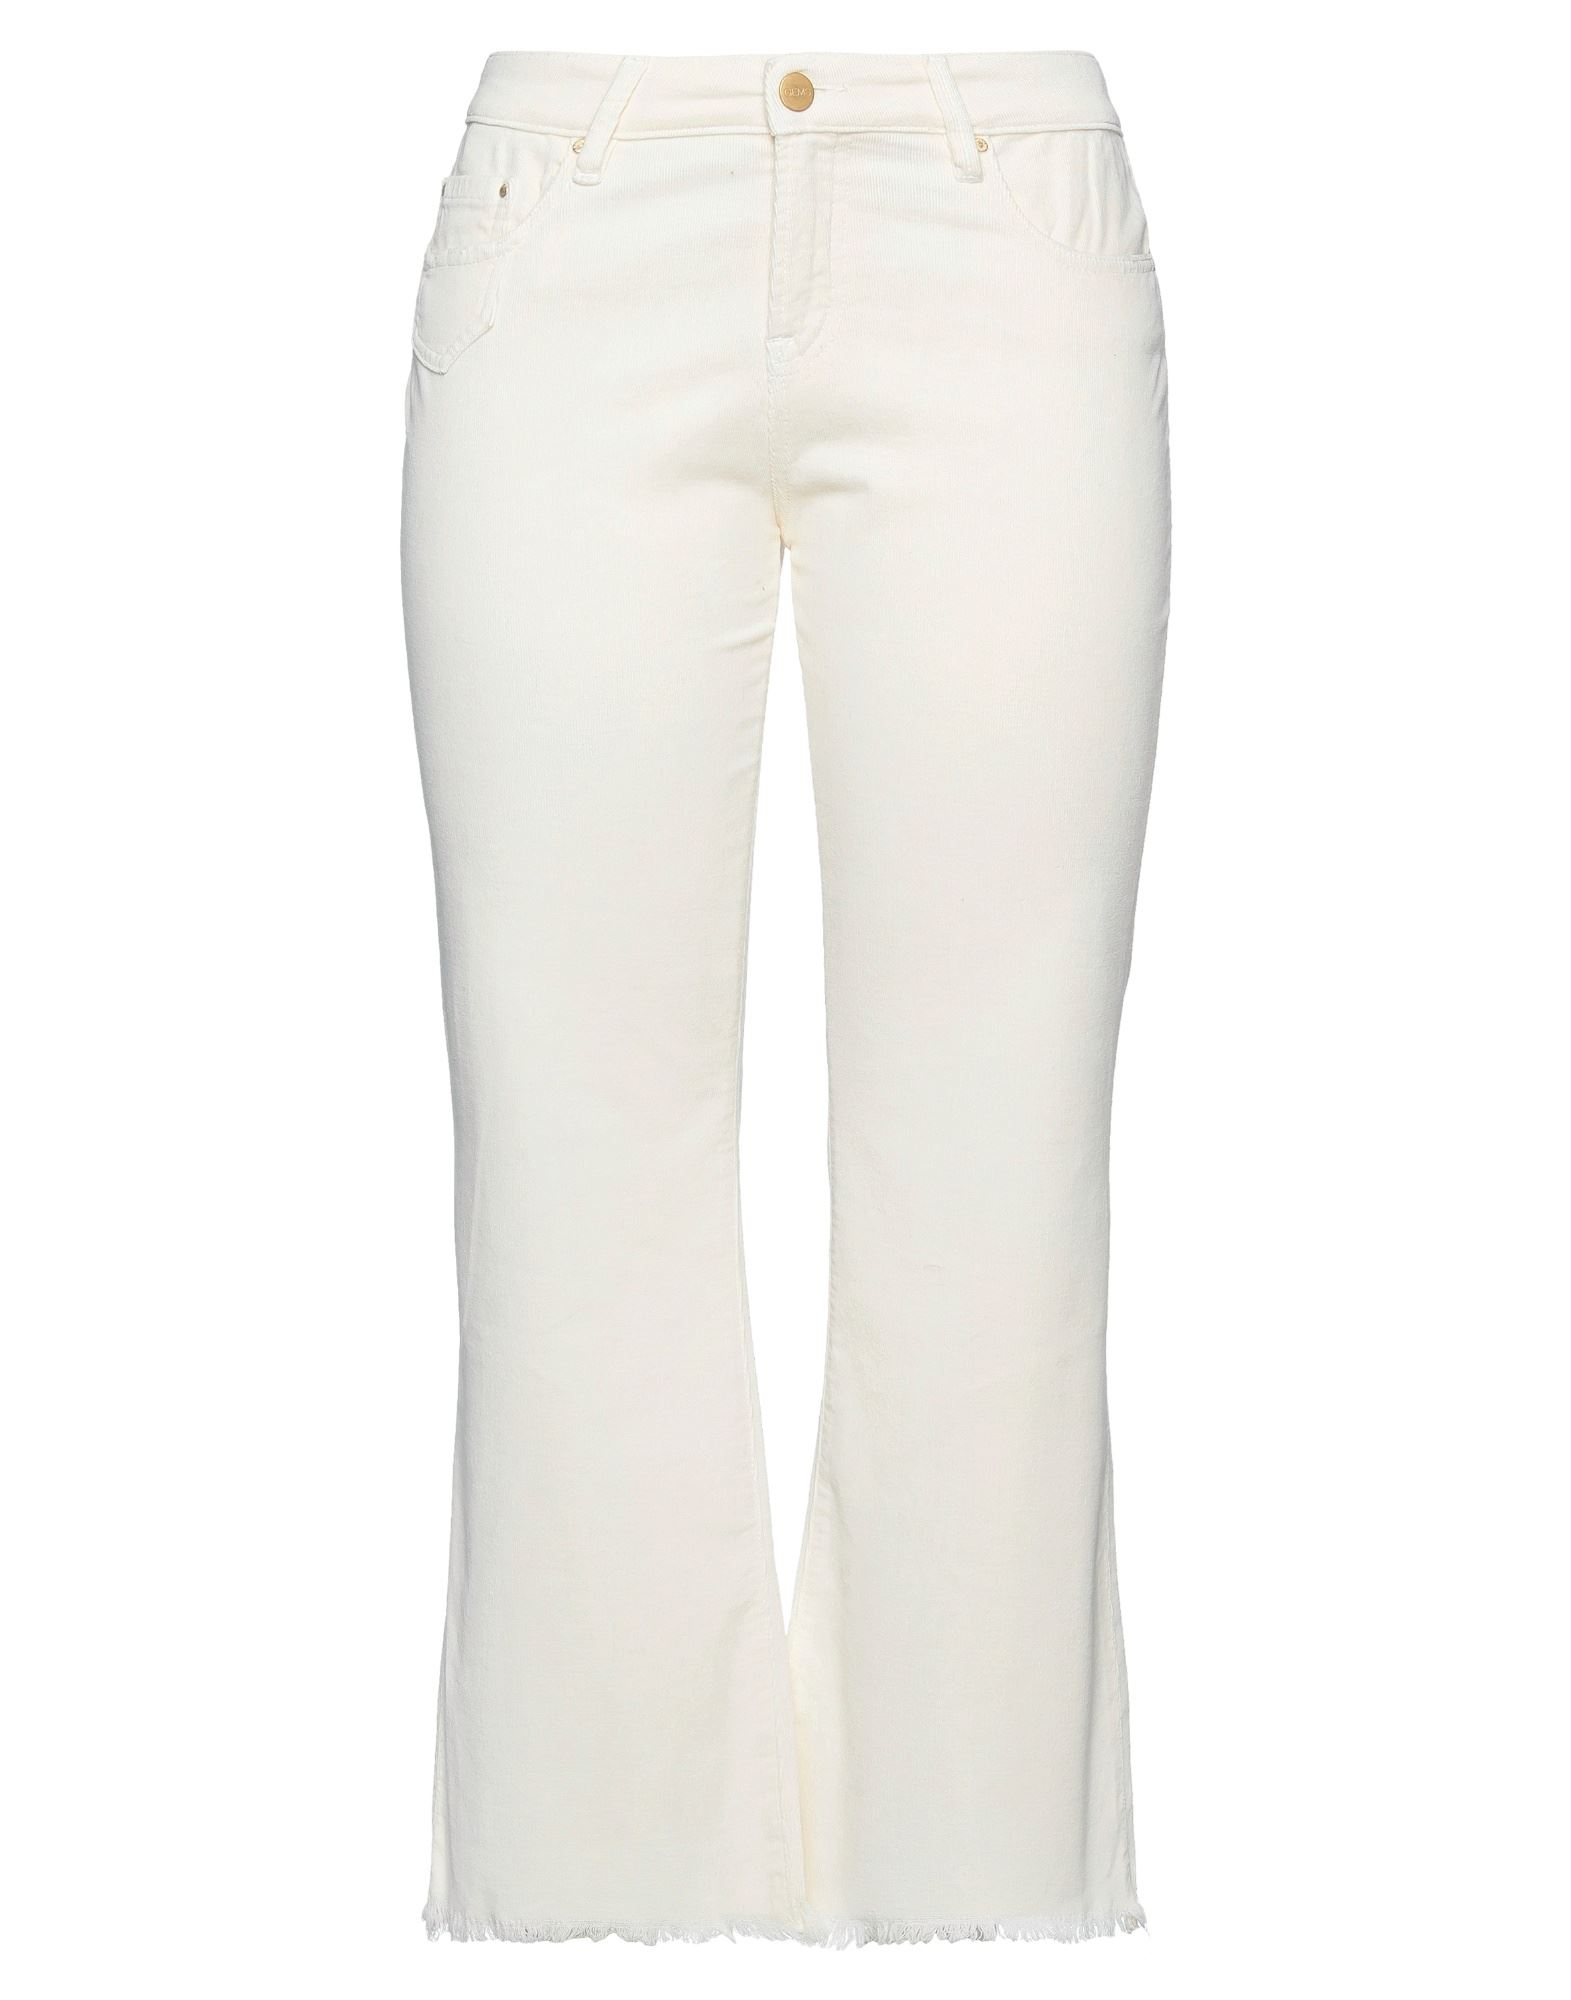 Gem's Pants In White